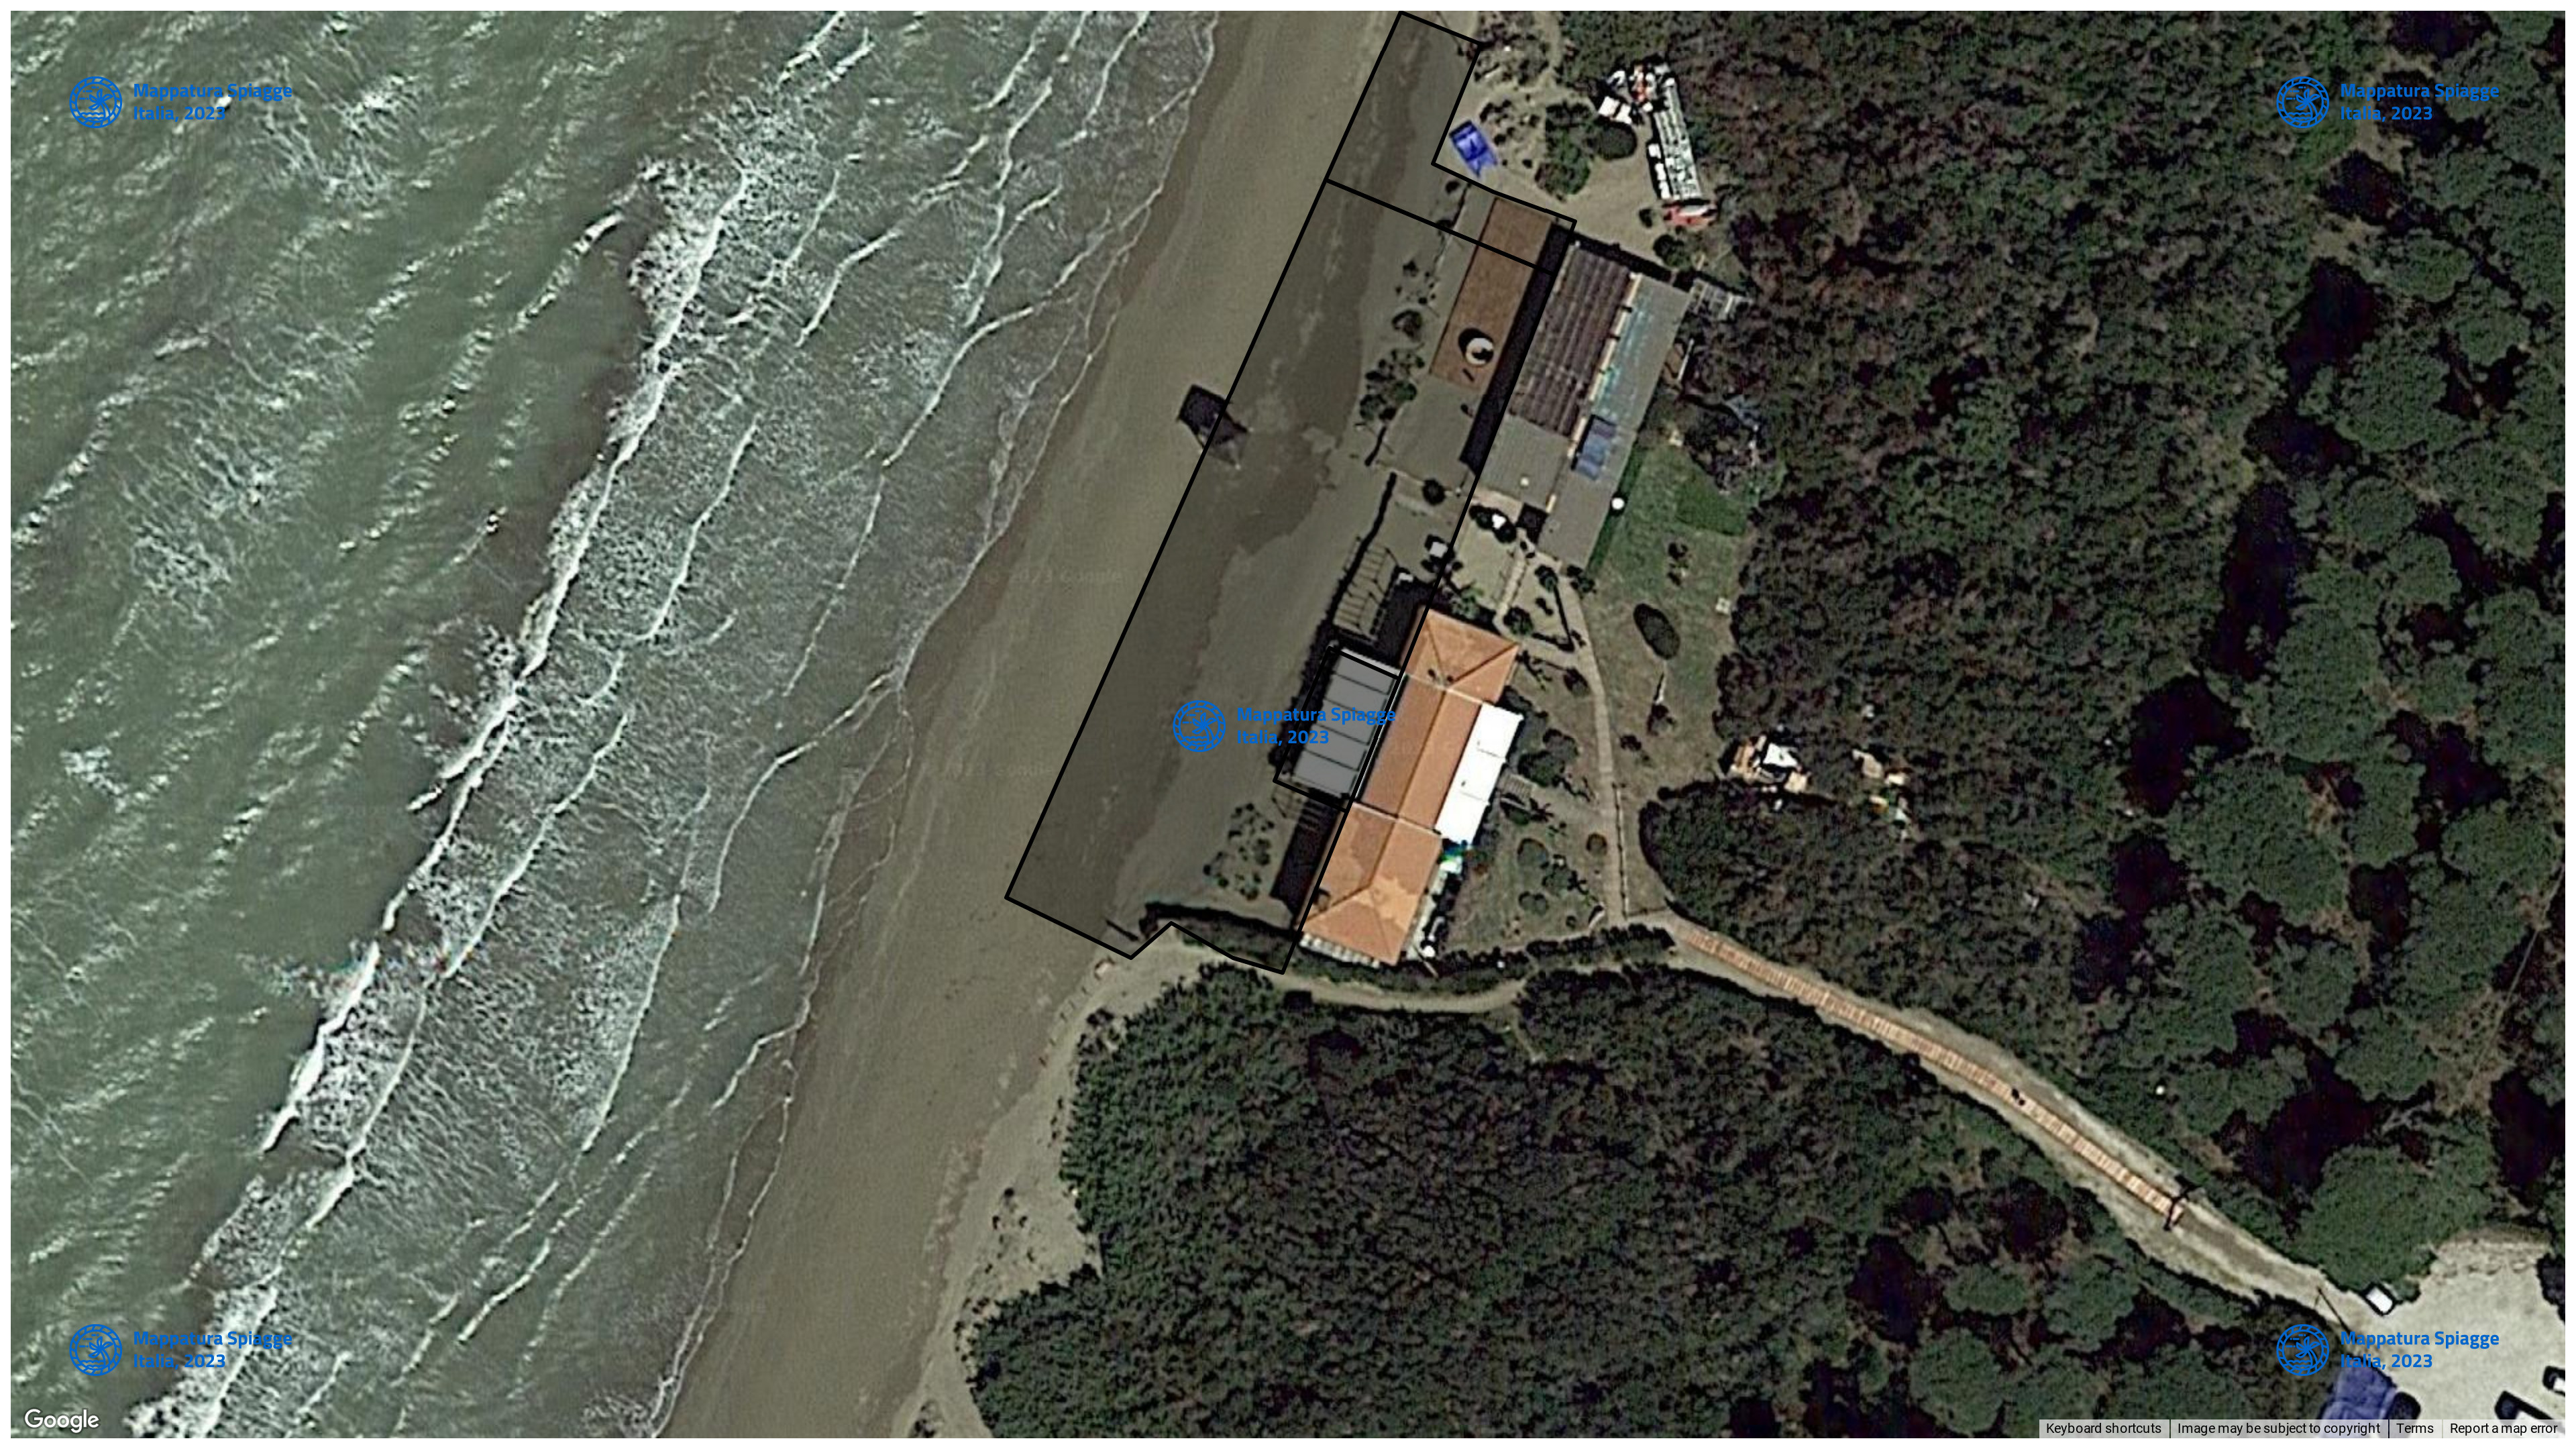 Foto Satellitare - Google Maps - Comune Orbetello, Concessione: N. 8 / 2018 del 19-09-2023